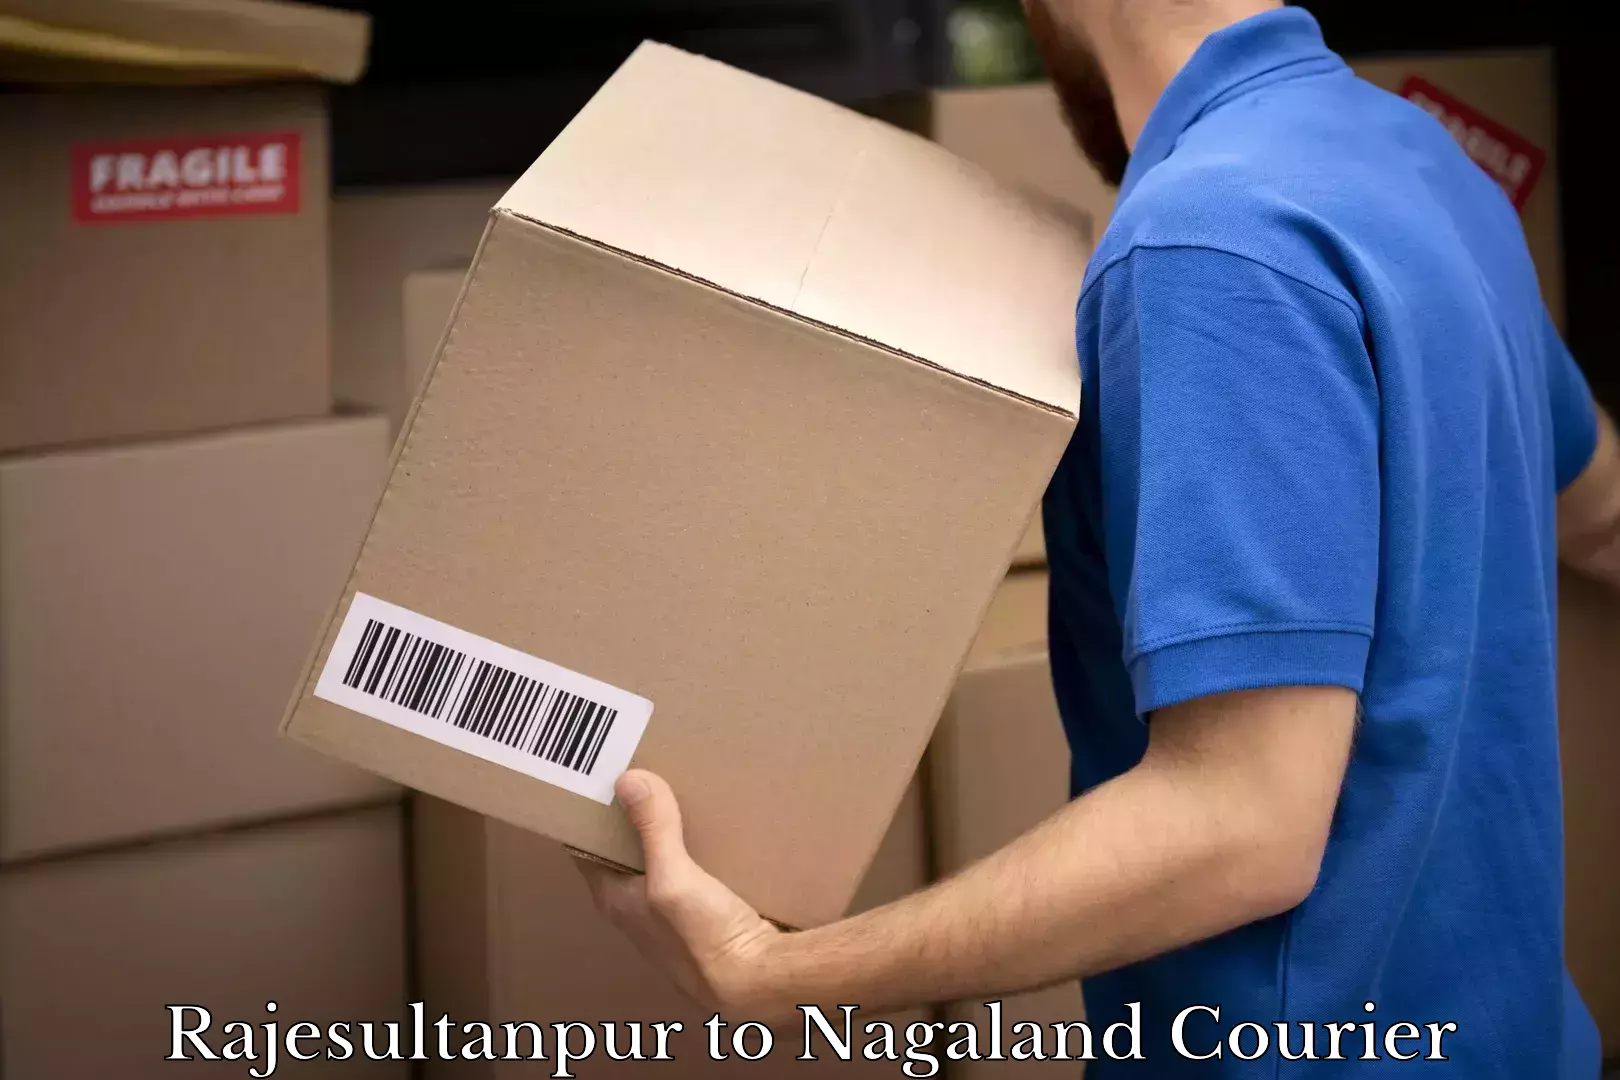 Affordable parcel service Rajesultanpur to Nagaland